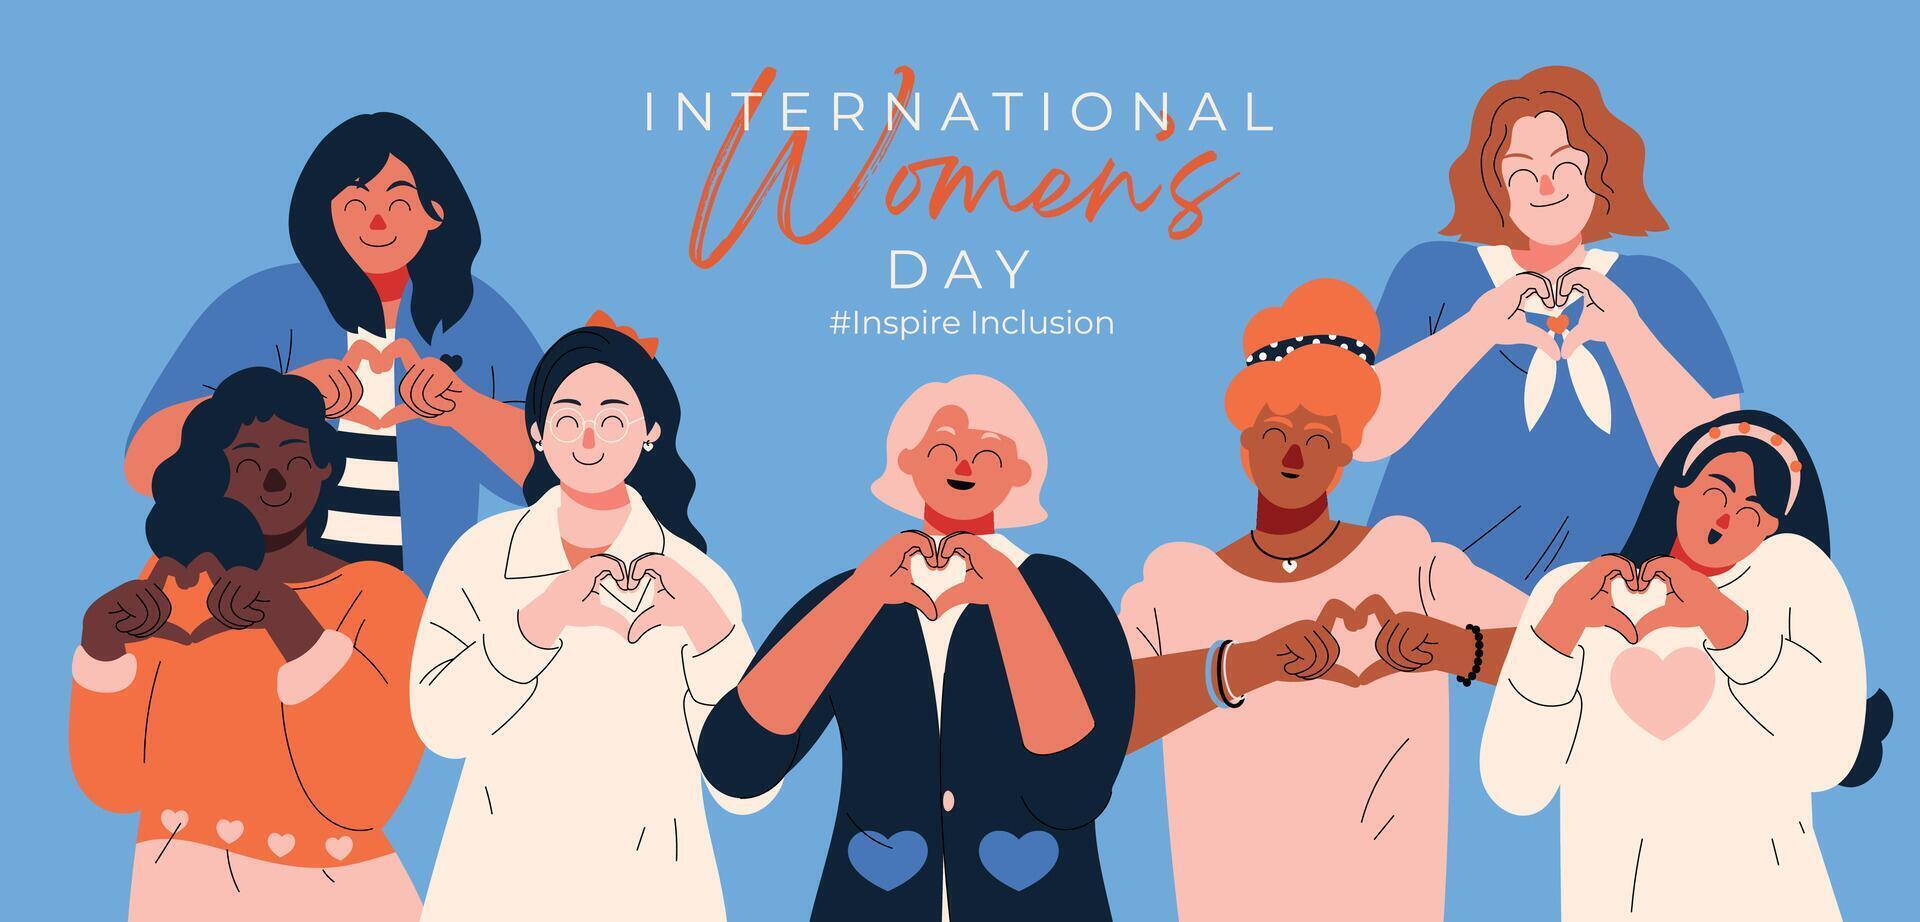 internationell kvinnors dag baner vektor. inspirera inkludering hashtag slogan med hand dragen kvinnor karaktär från olika bakgrund hjärta form hand gest. design för affisch, kampanj, social media. vektor